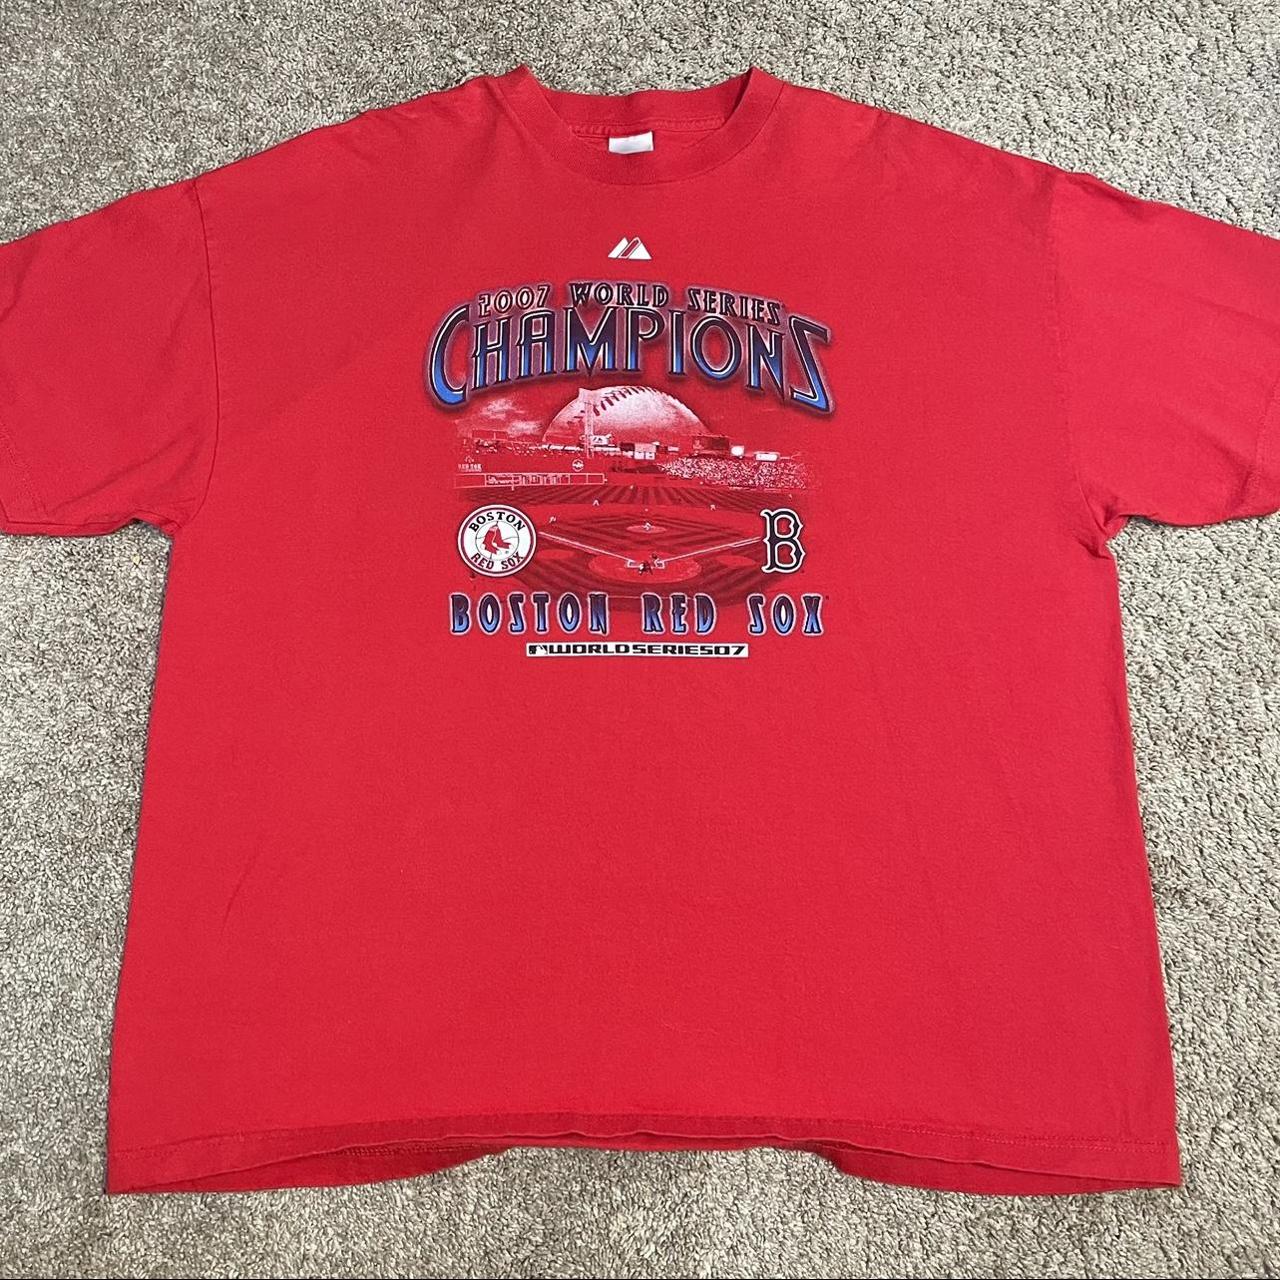 World Series Red Sox shirt Long sleeve 2007 - Depop